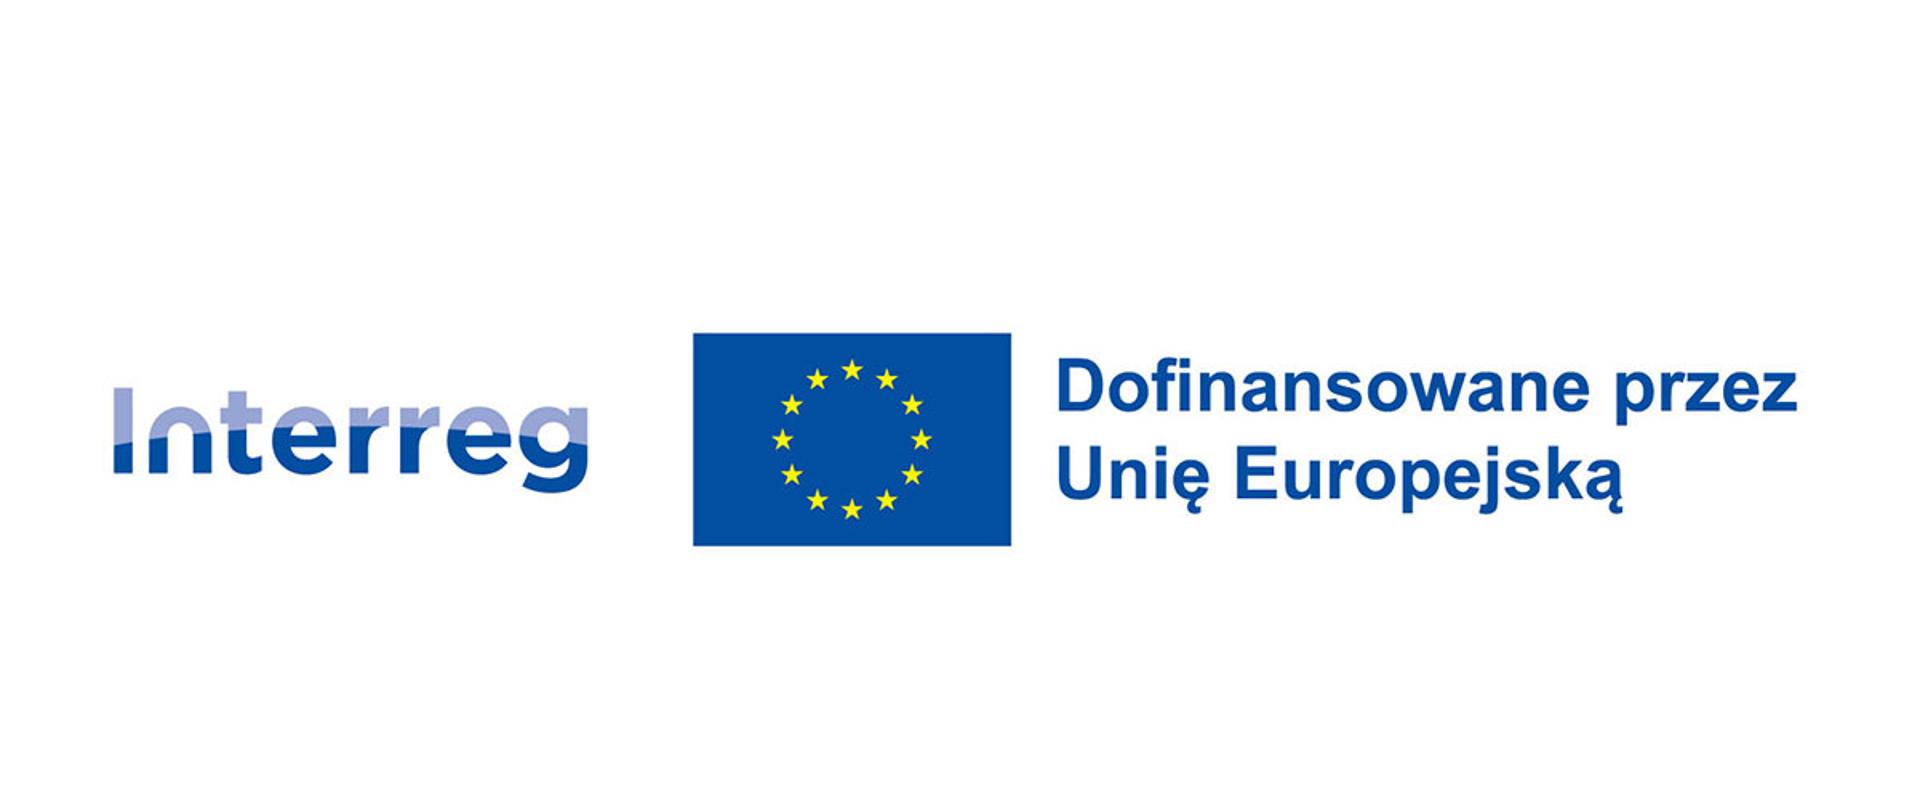 Zdjęcie przedstawia na białym tle logo Interreg flagę Unii Europejskiej oraz napis "Dofinansowane przez Unię Europejską". Grafiki są niebieskie.